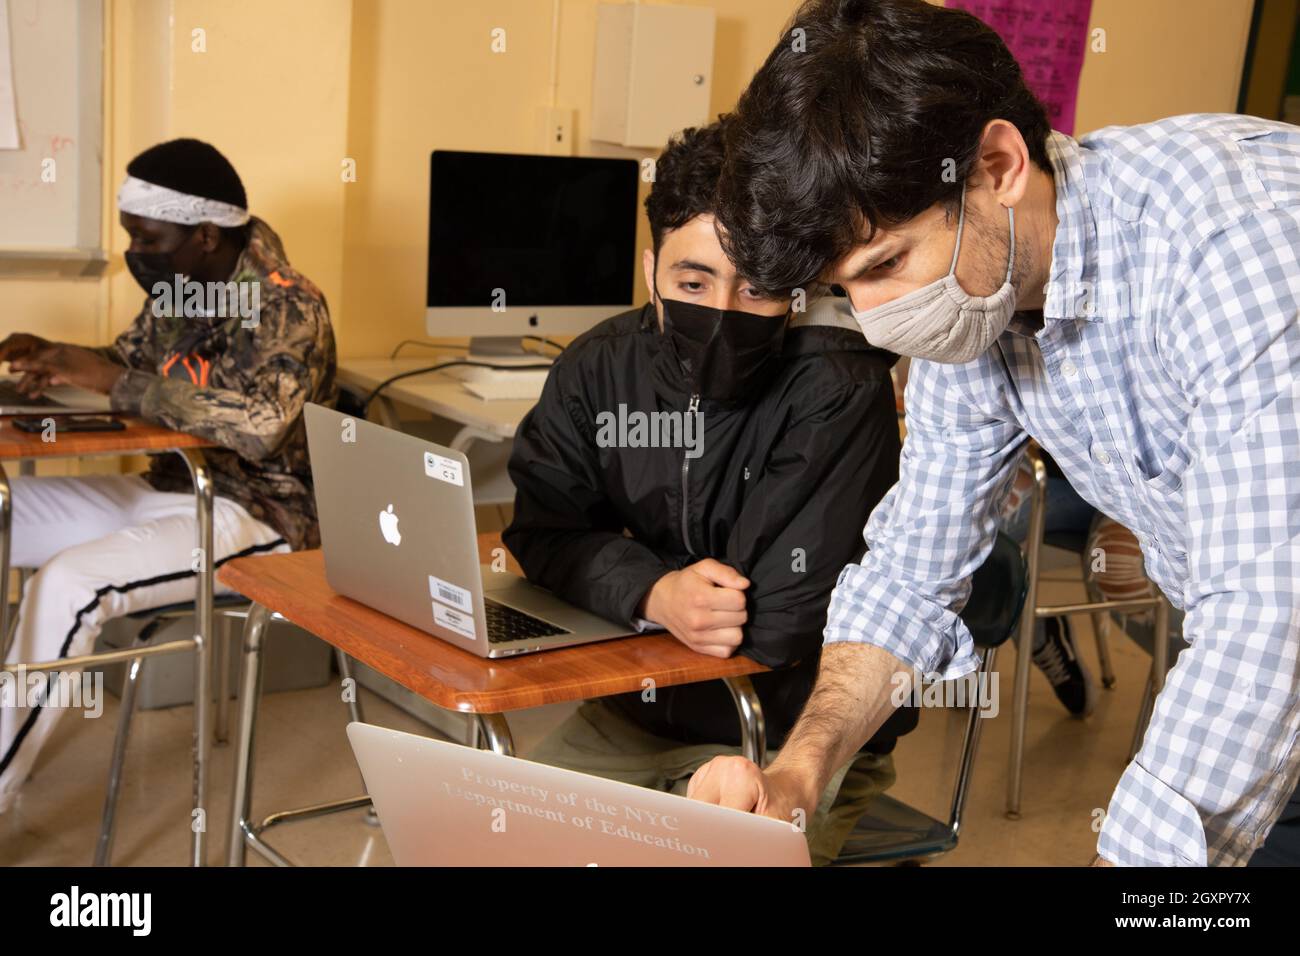 Educación Maestro masculino de la High School que se inclina para mostrar a estudiante masculino algo en la computadora portátil, ambos usando máscaras faciales para proteger contra Covid-19 Foto de stock